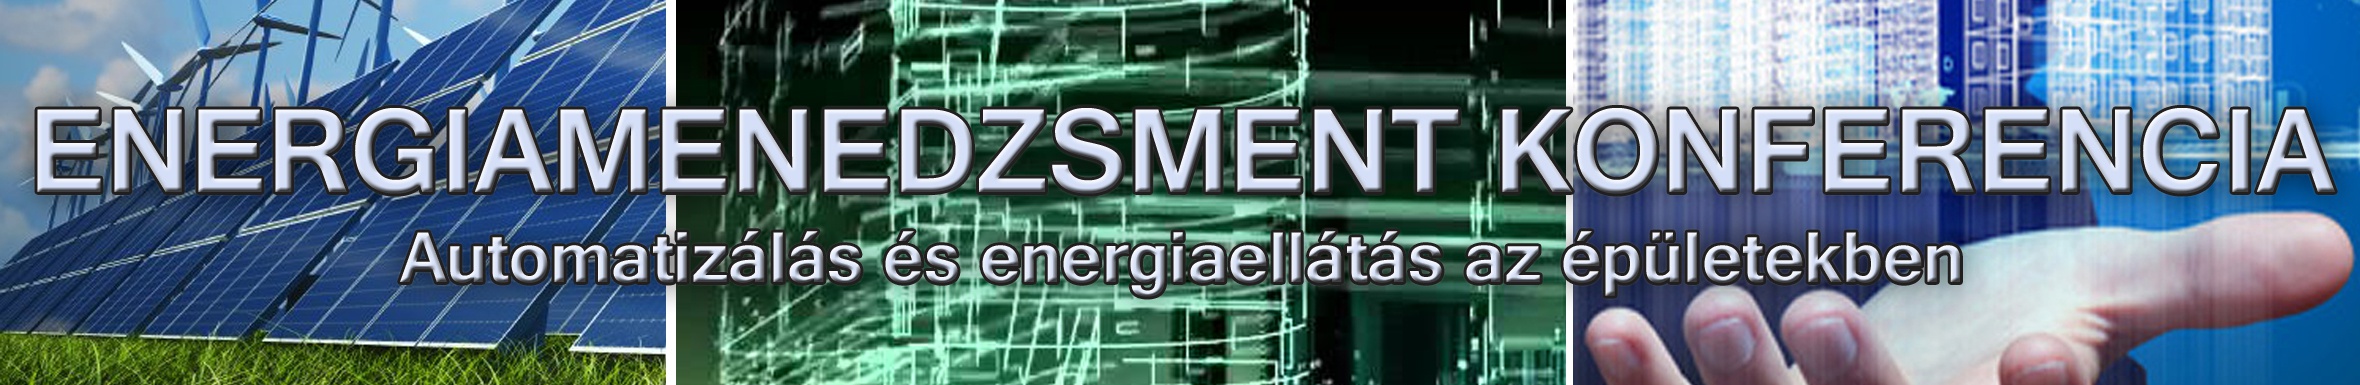 energiamen_2360